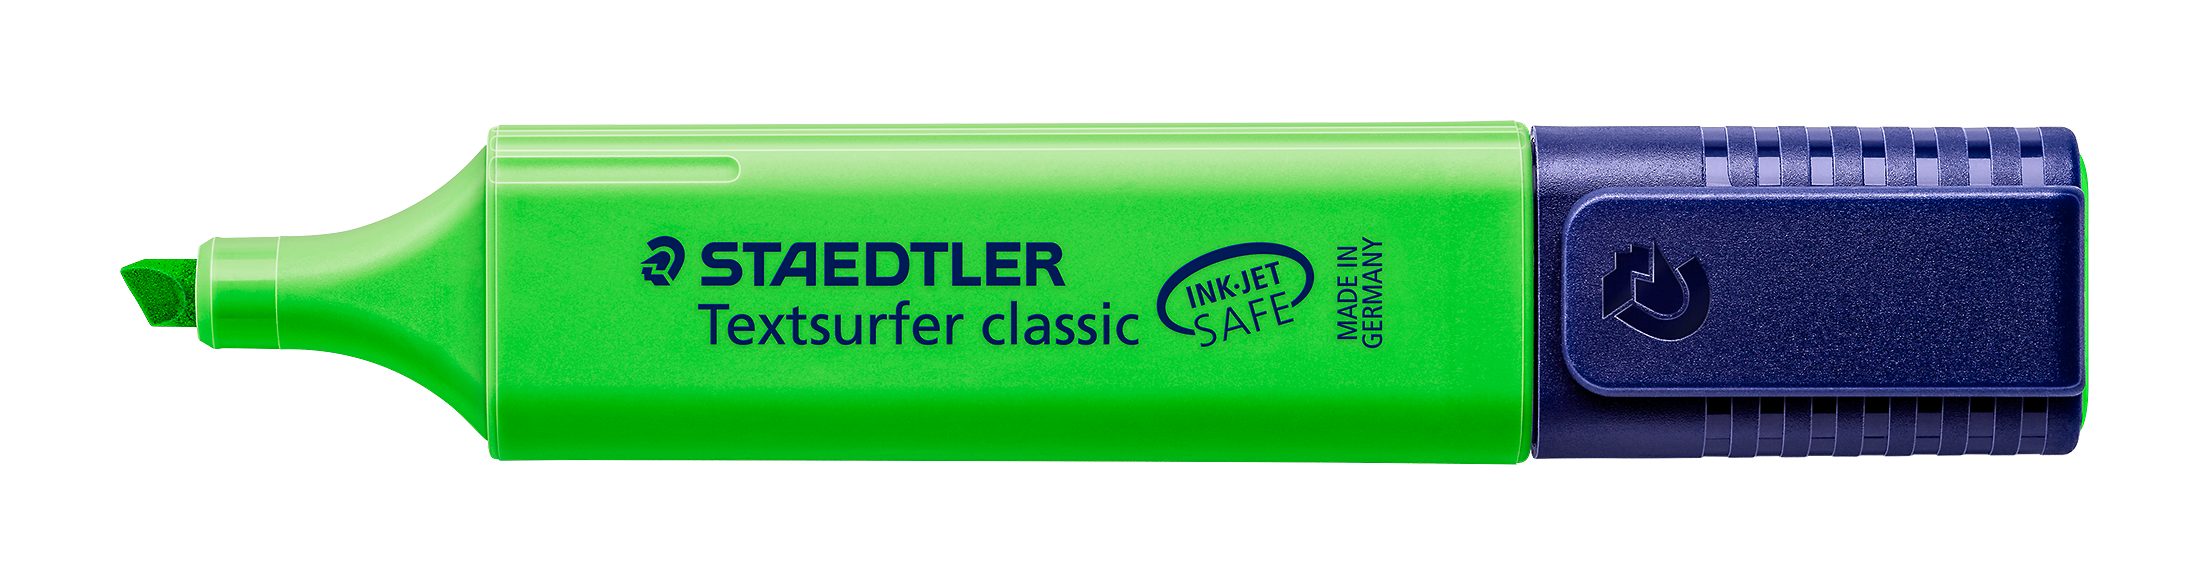 STAEDTLER Marker Staedtler Textsurfer classic grün 364-5 Leuchtstift, INK JET SAFE